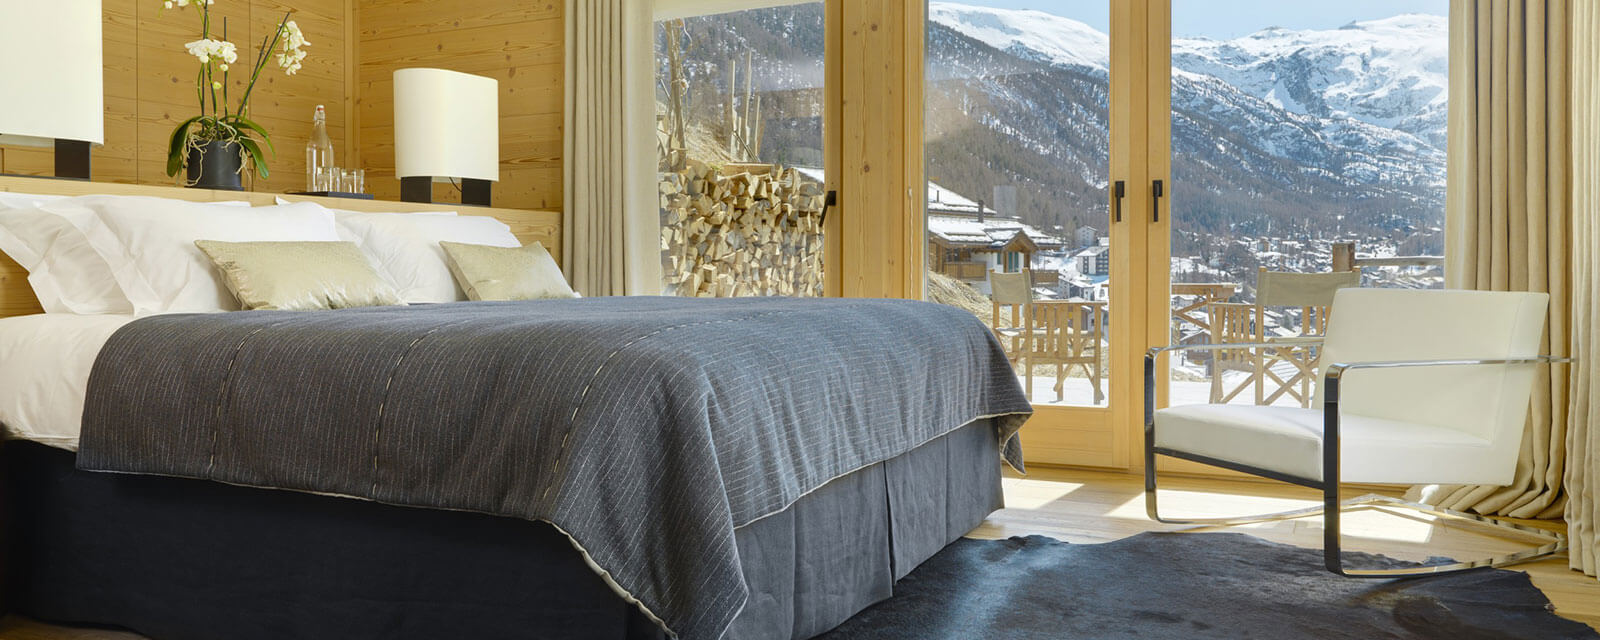 Chalet Zermatt Schlafzimmer 2 1